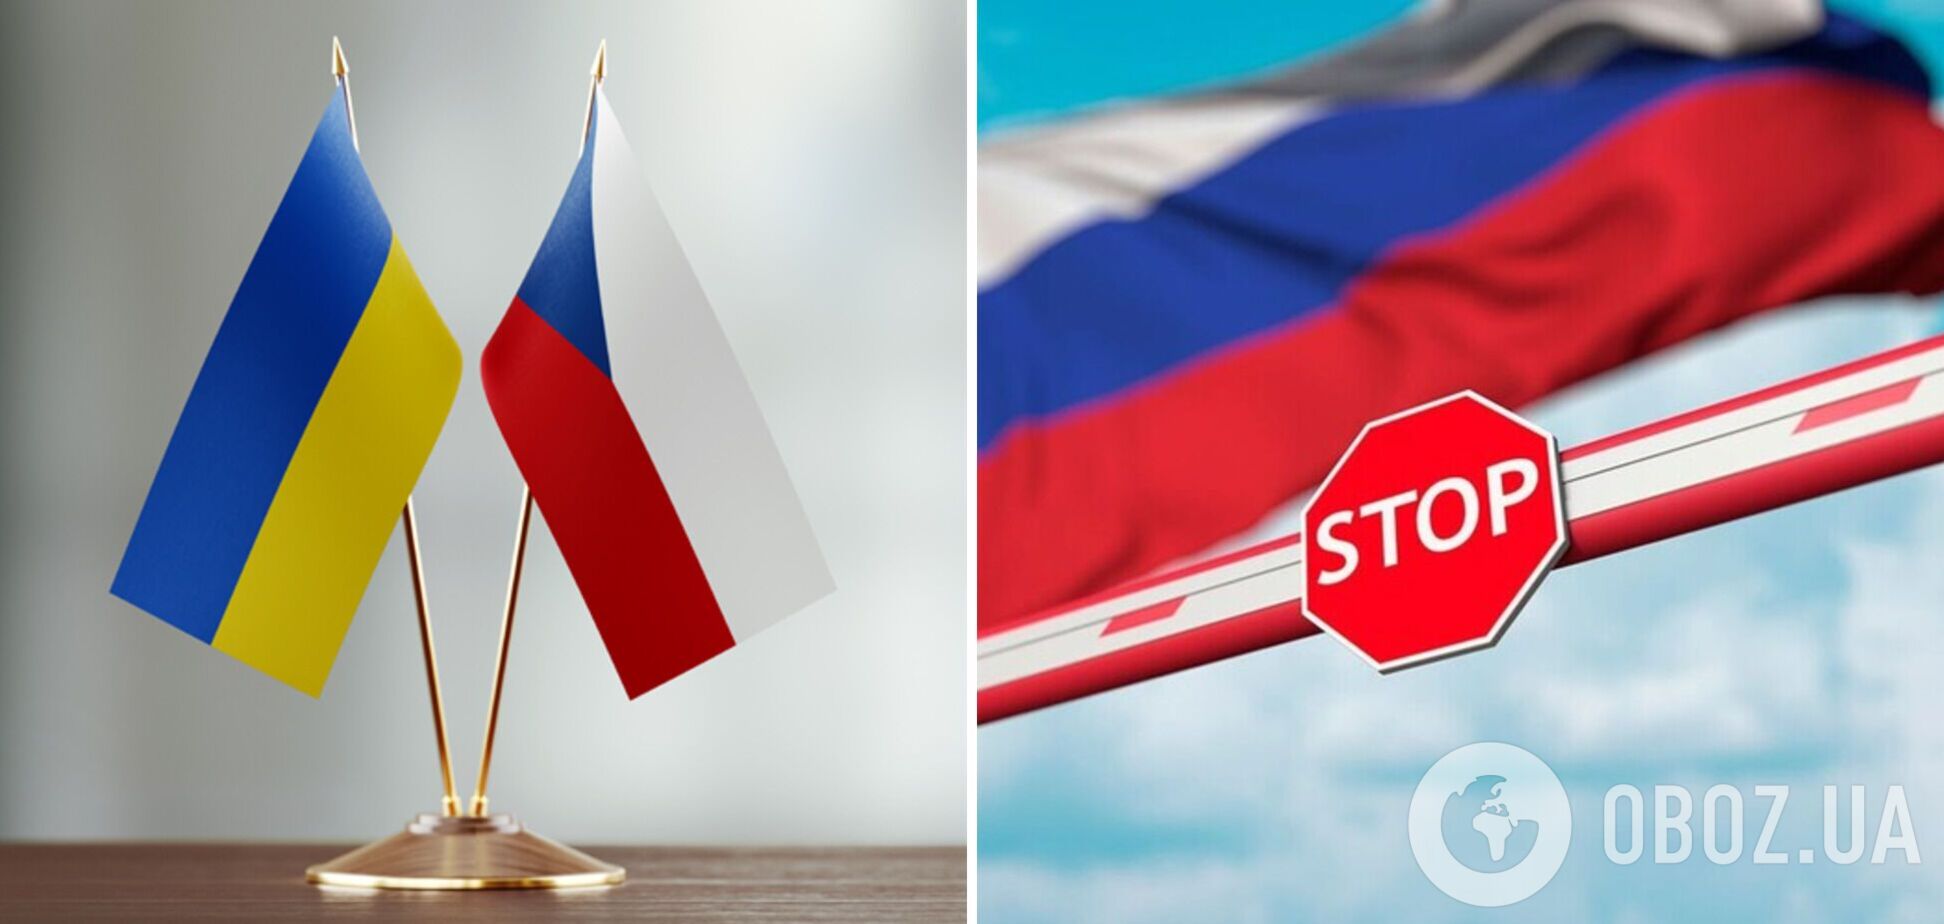 Чехия с 25 октября закрыла въезд россиянам по туристическим визам